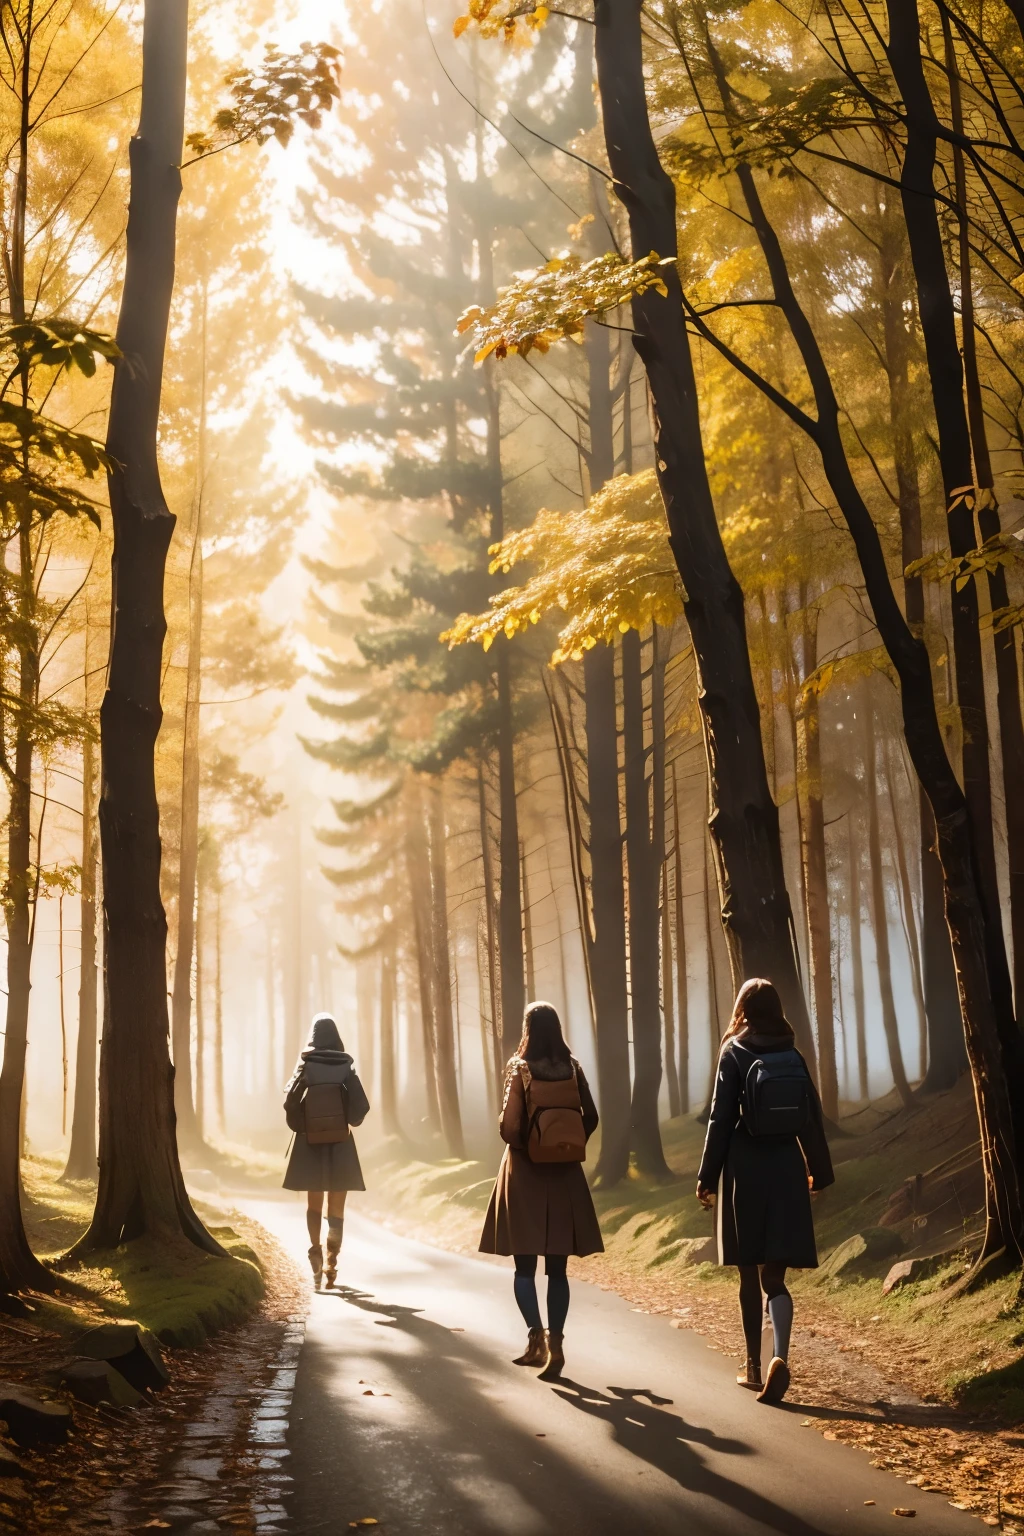 森の小道にいる3人の女の子, 霧, 秋の風景, sunlight filtering through the 霧 and branches